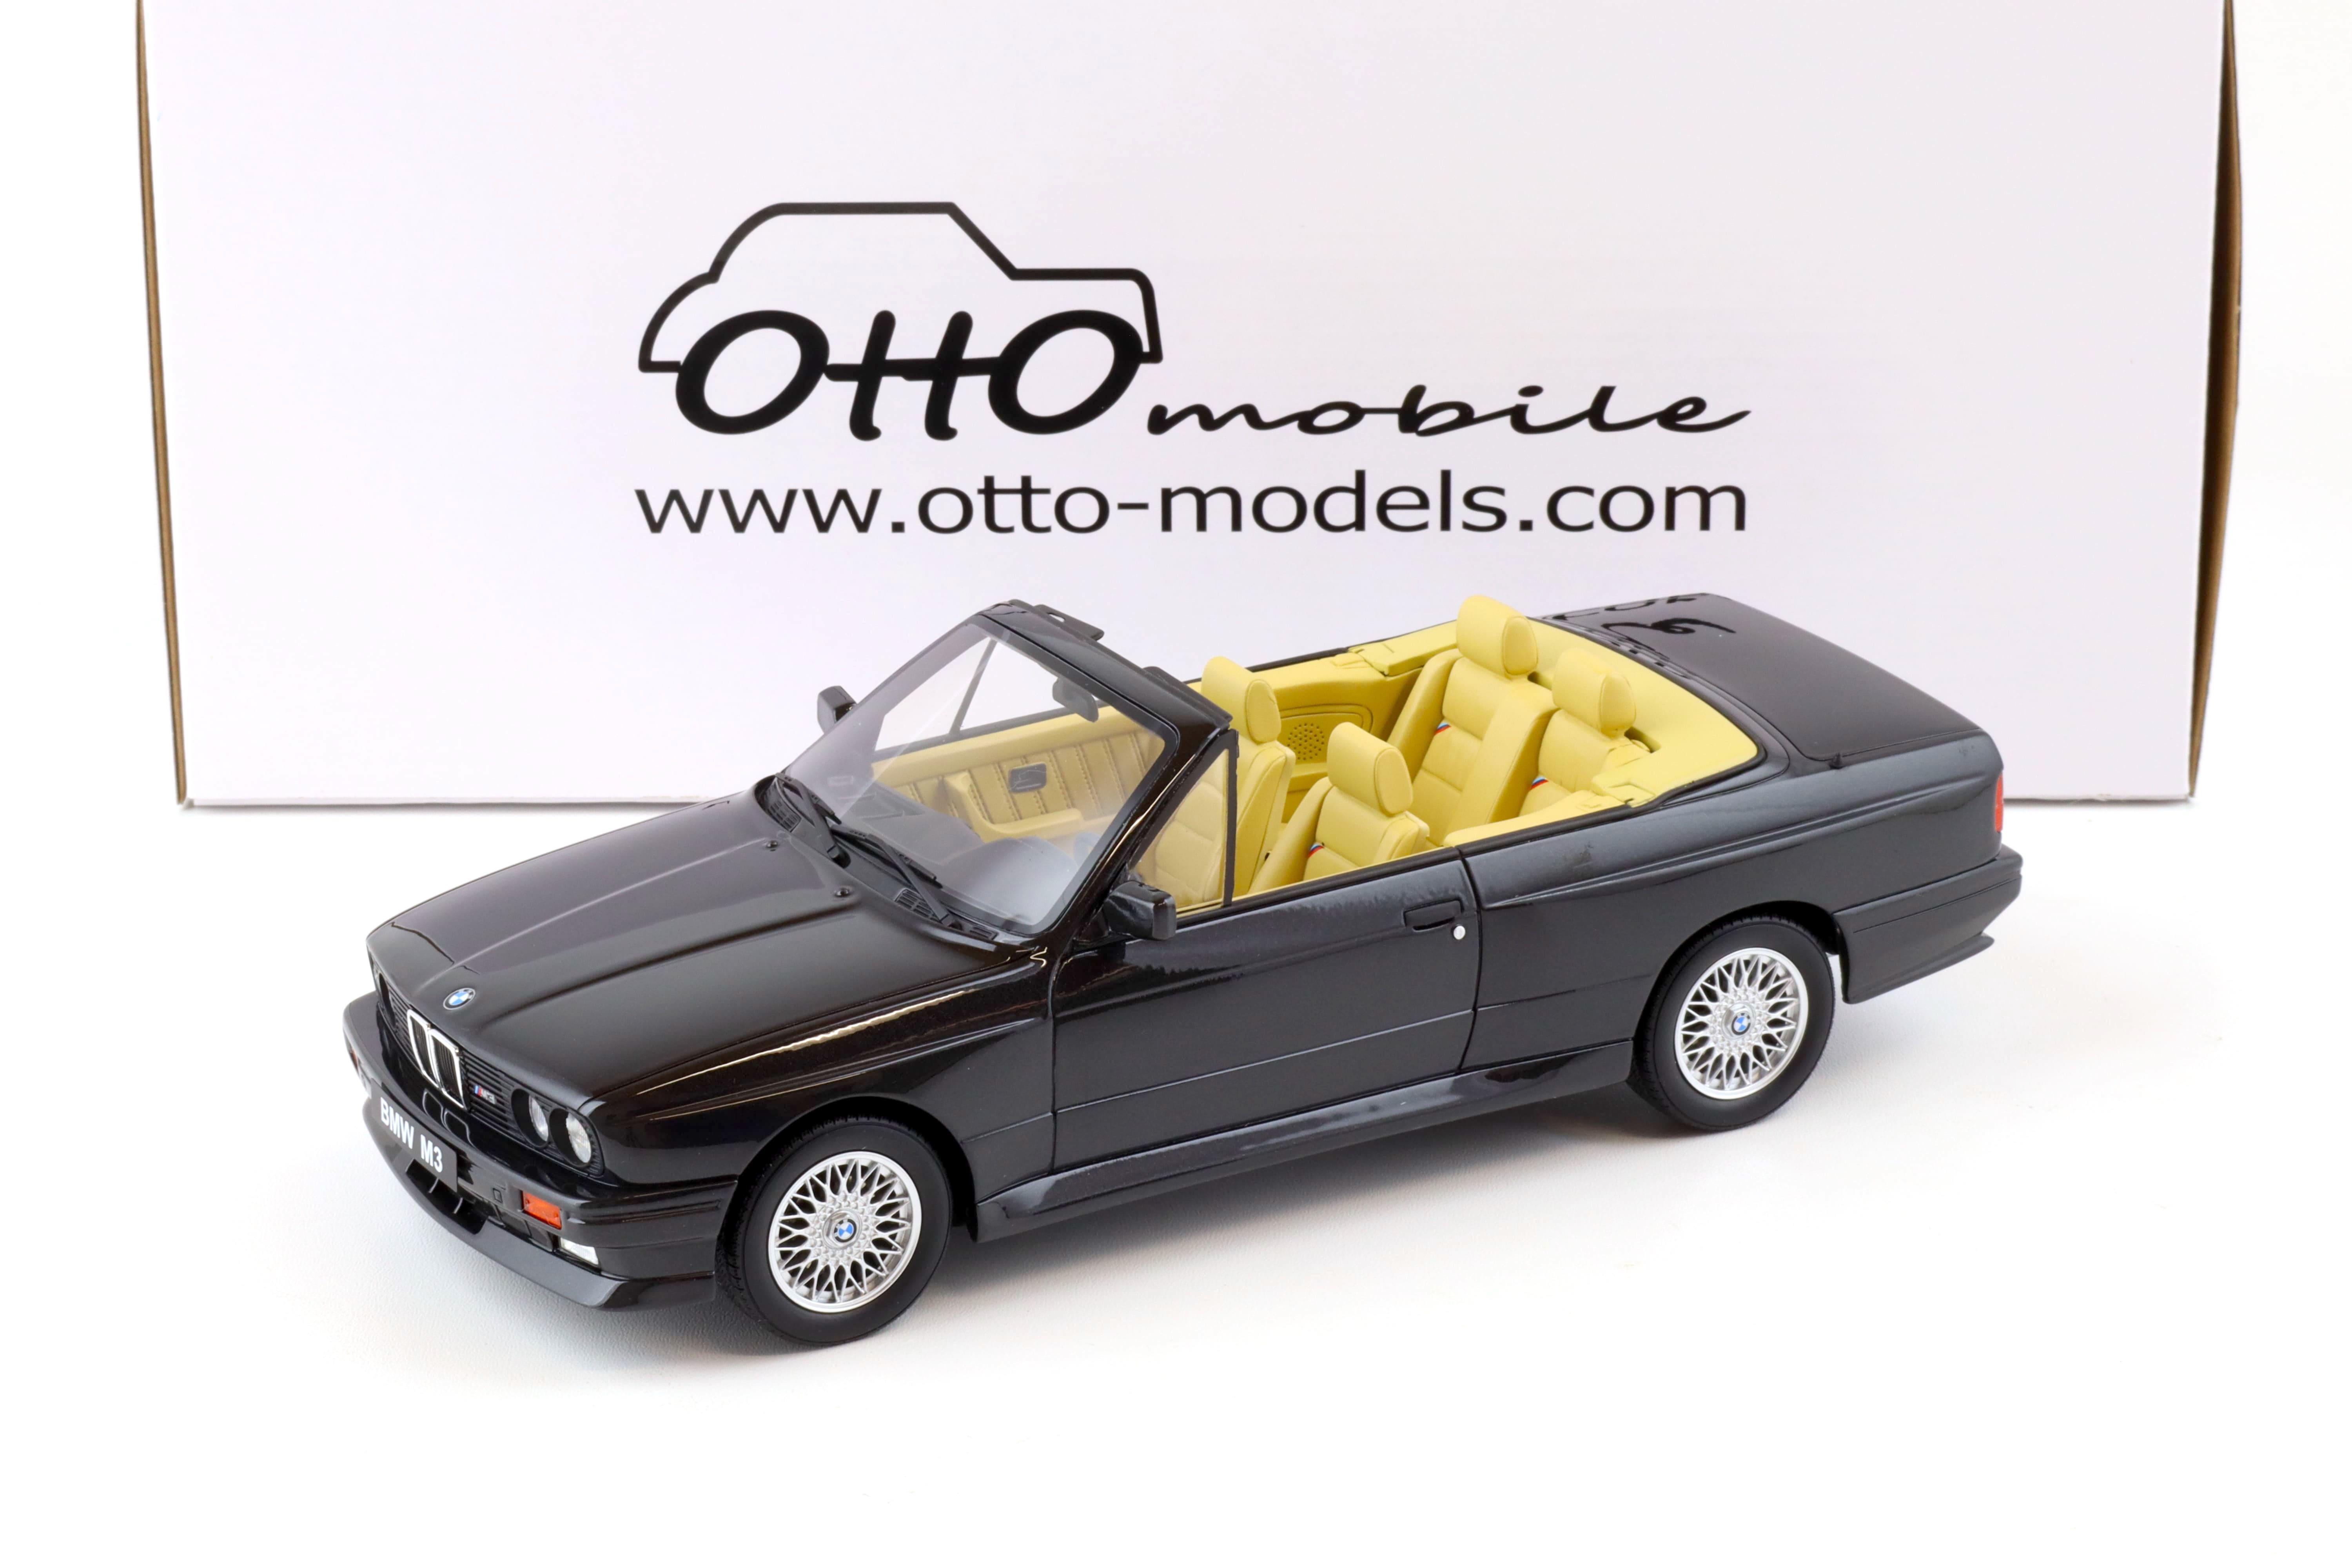 1:18 OTTO mobile OT1012 BMW M3 (E30) Convertible black 1989